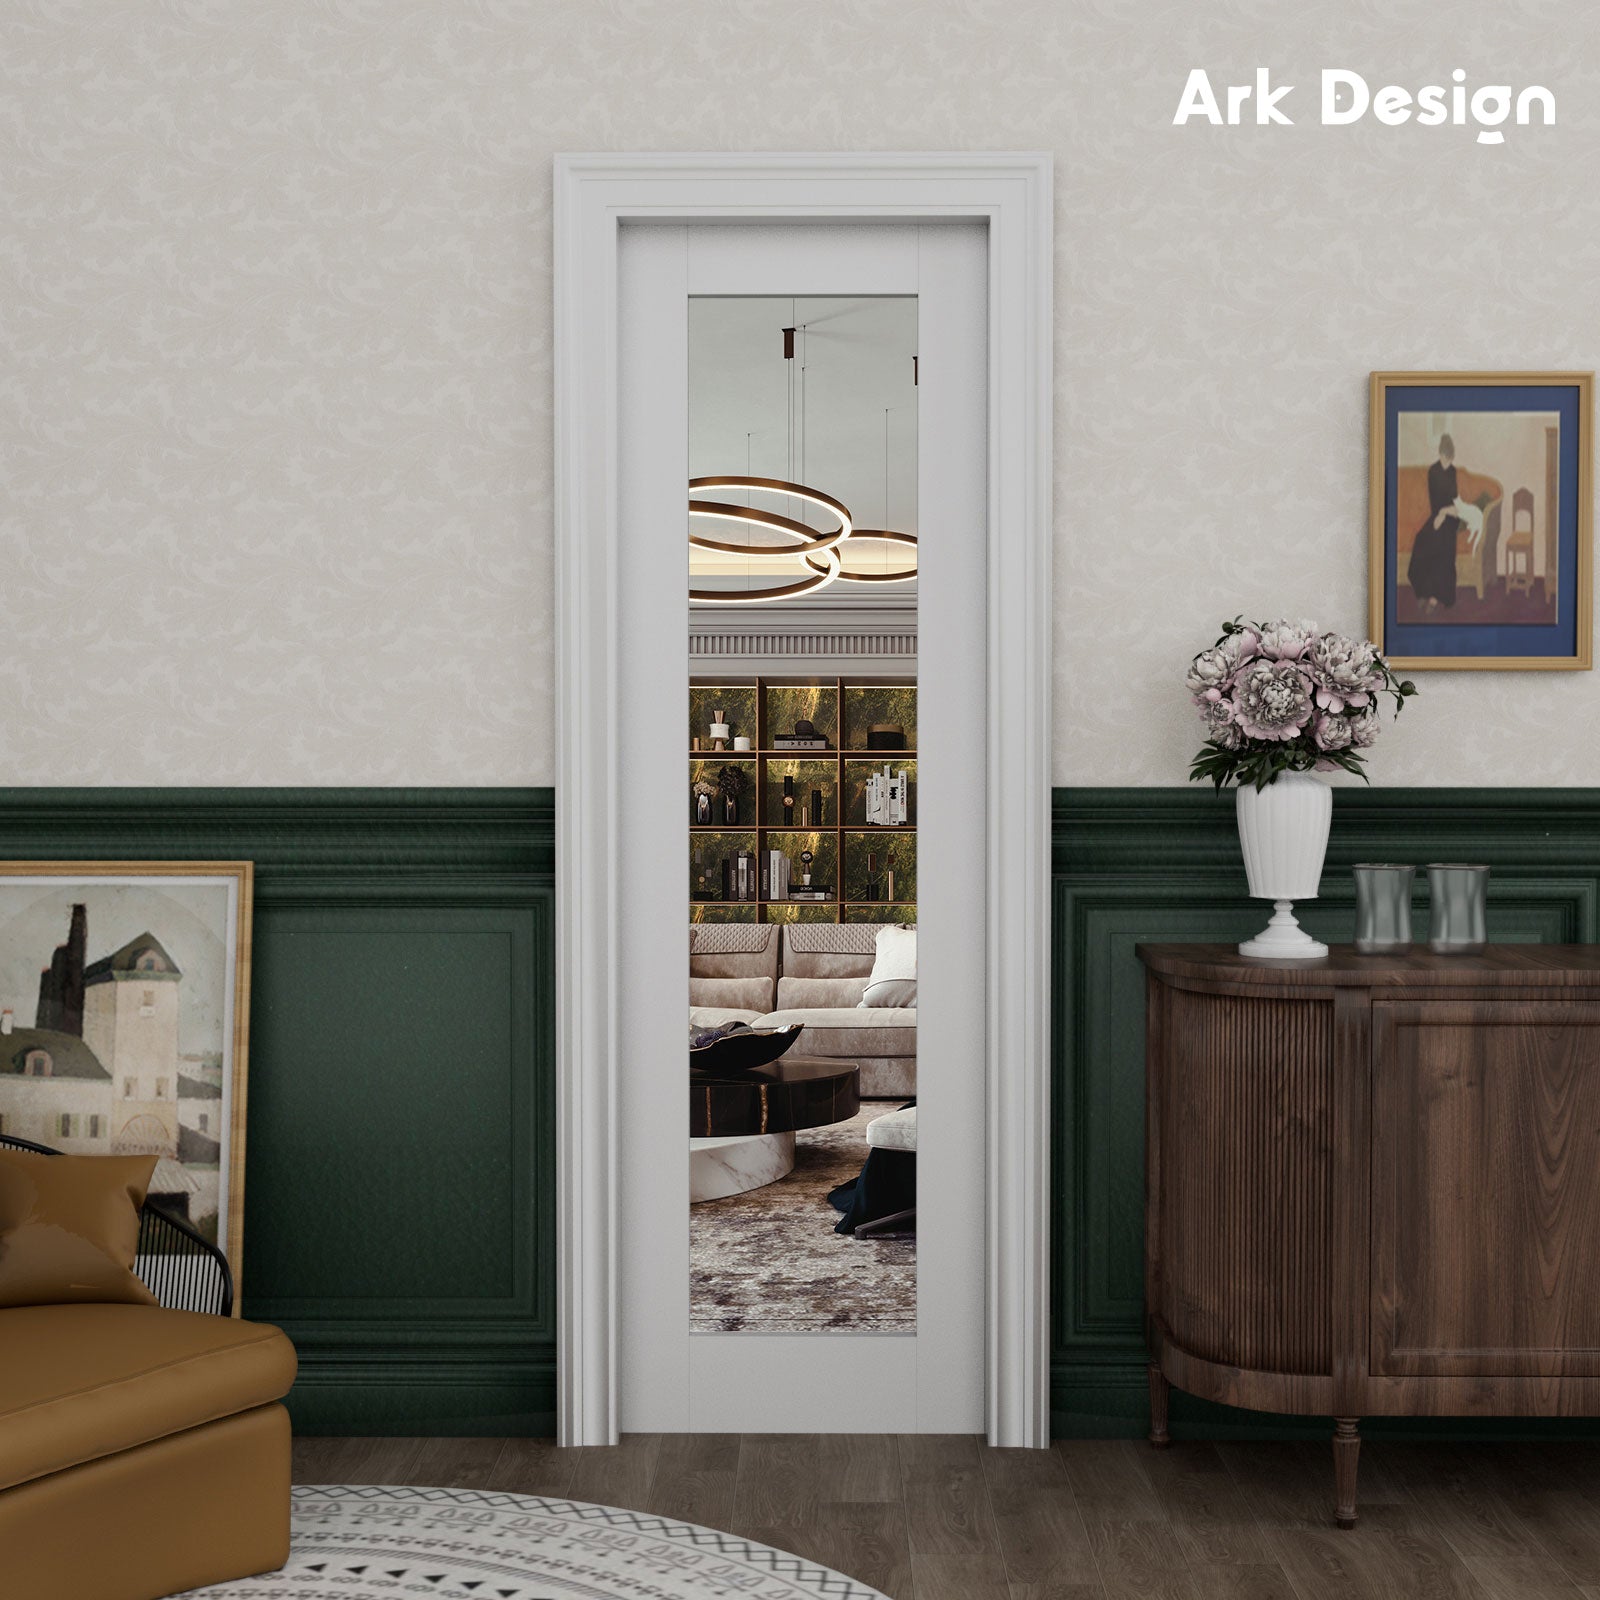 Ark Design Modern Mirror Pocket Door for Home